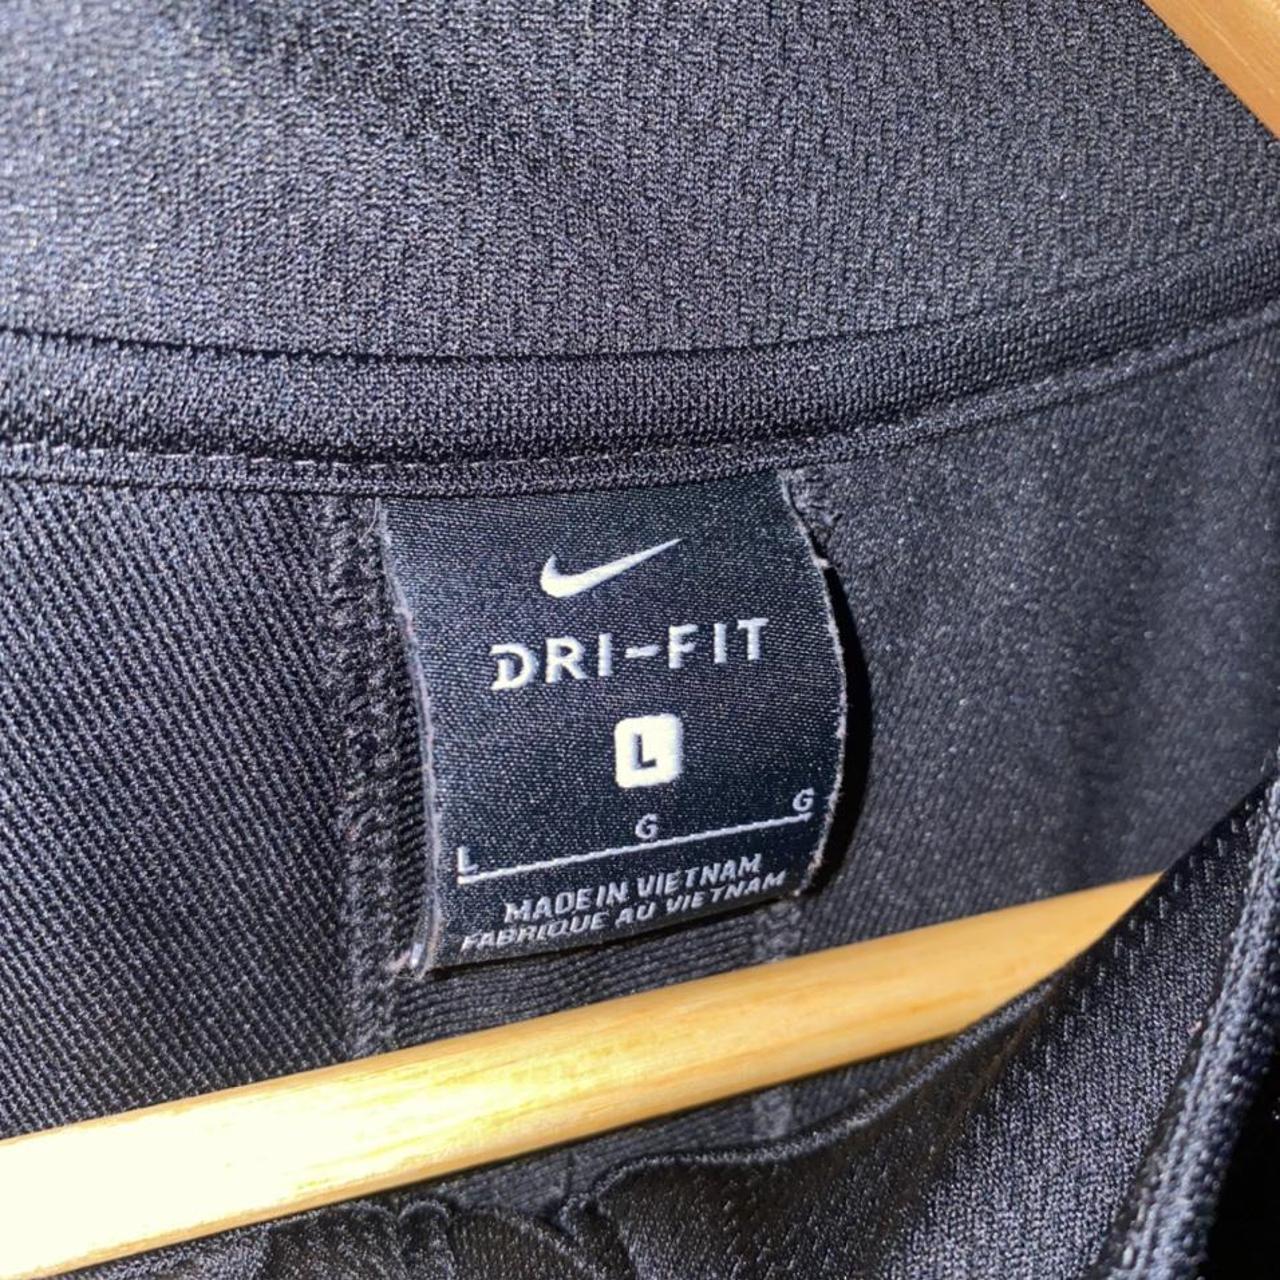 Nike dri-fit track jacket worn multiple times still... - Depop